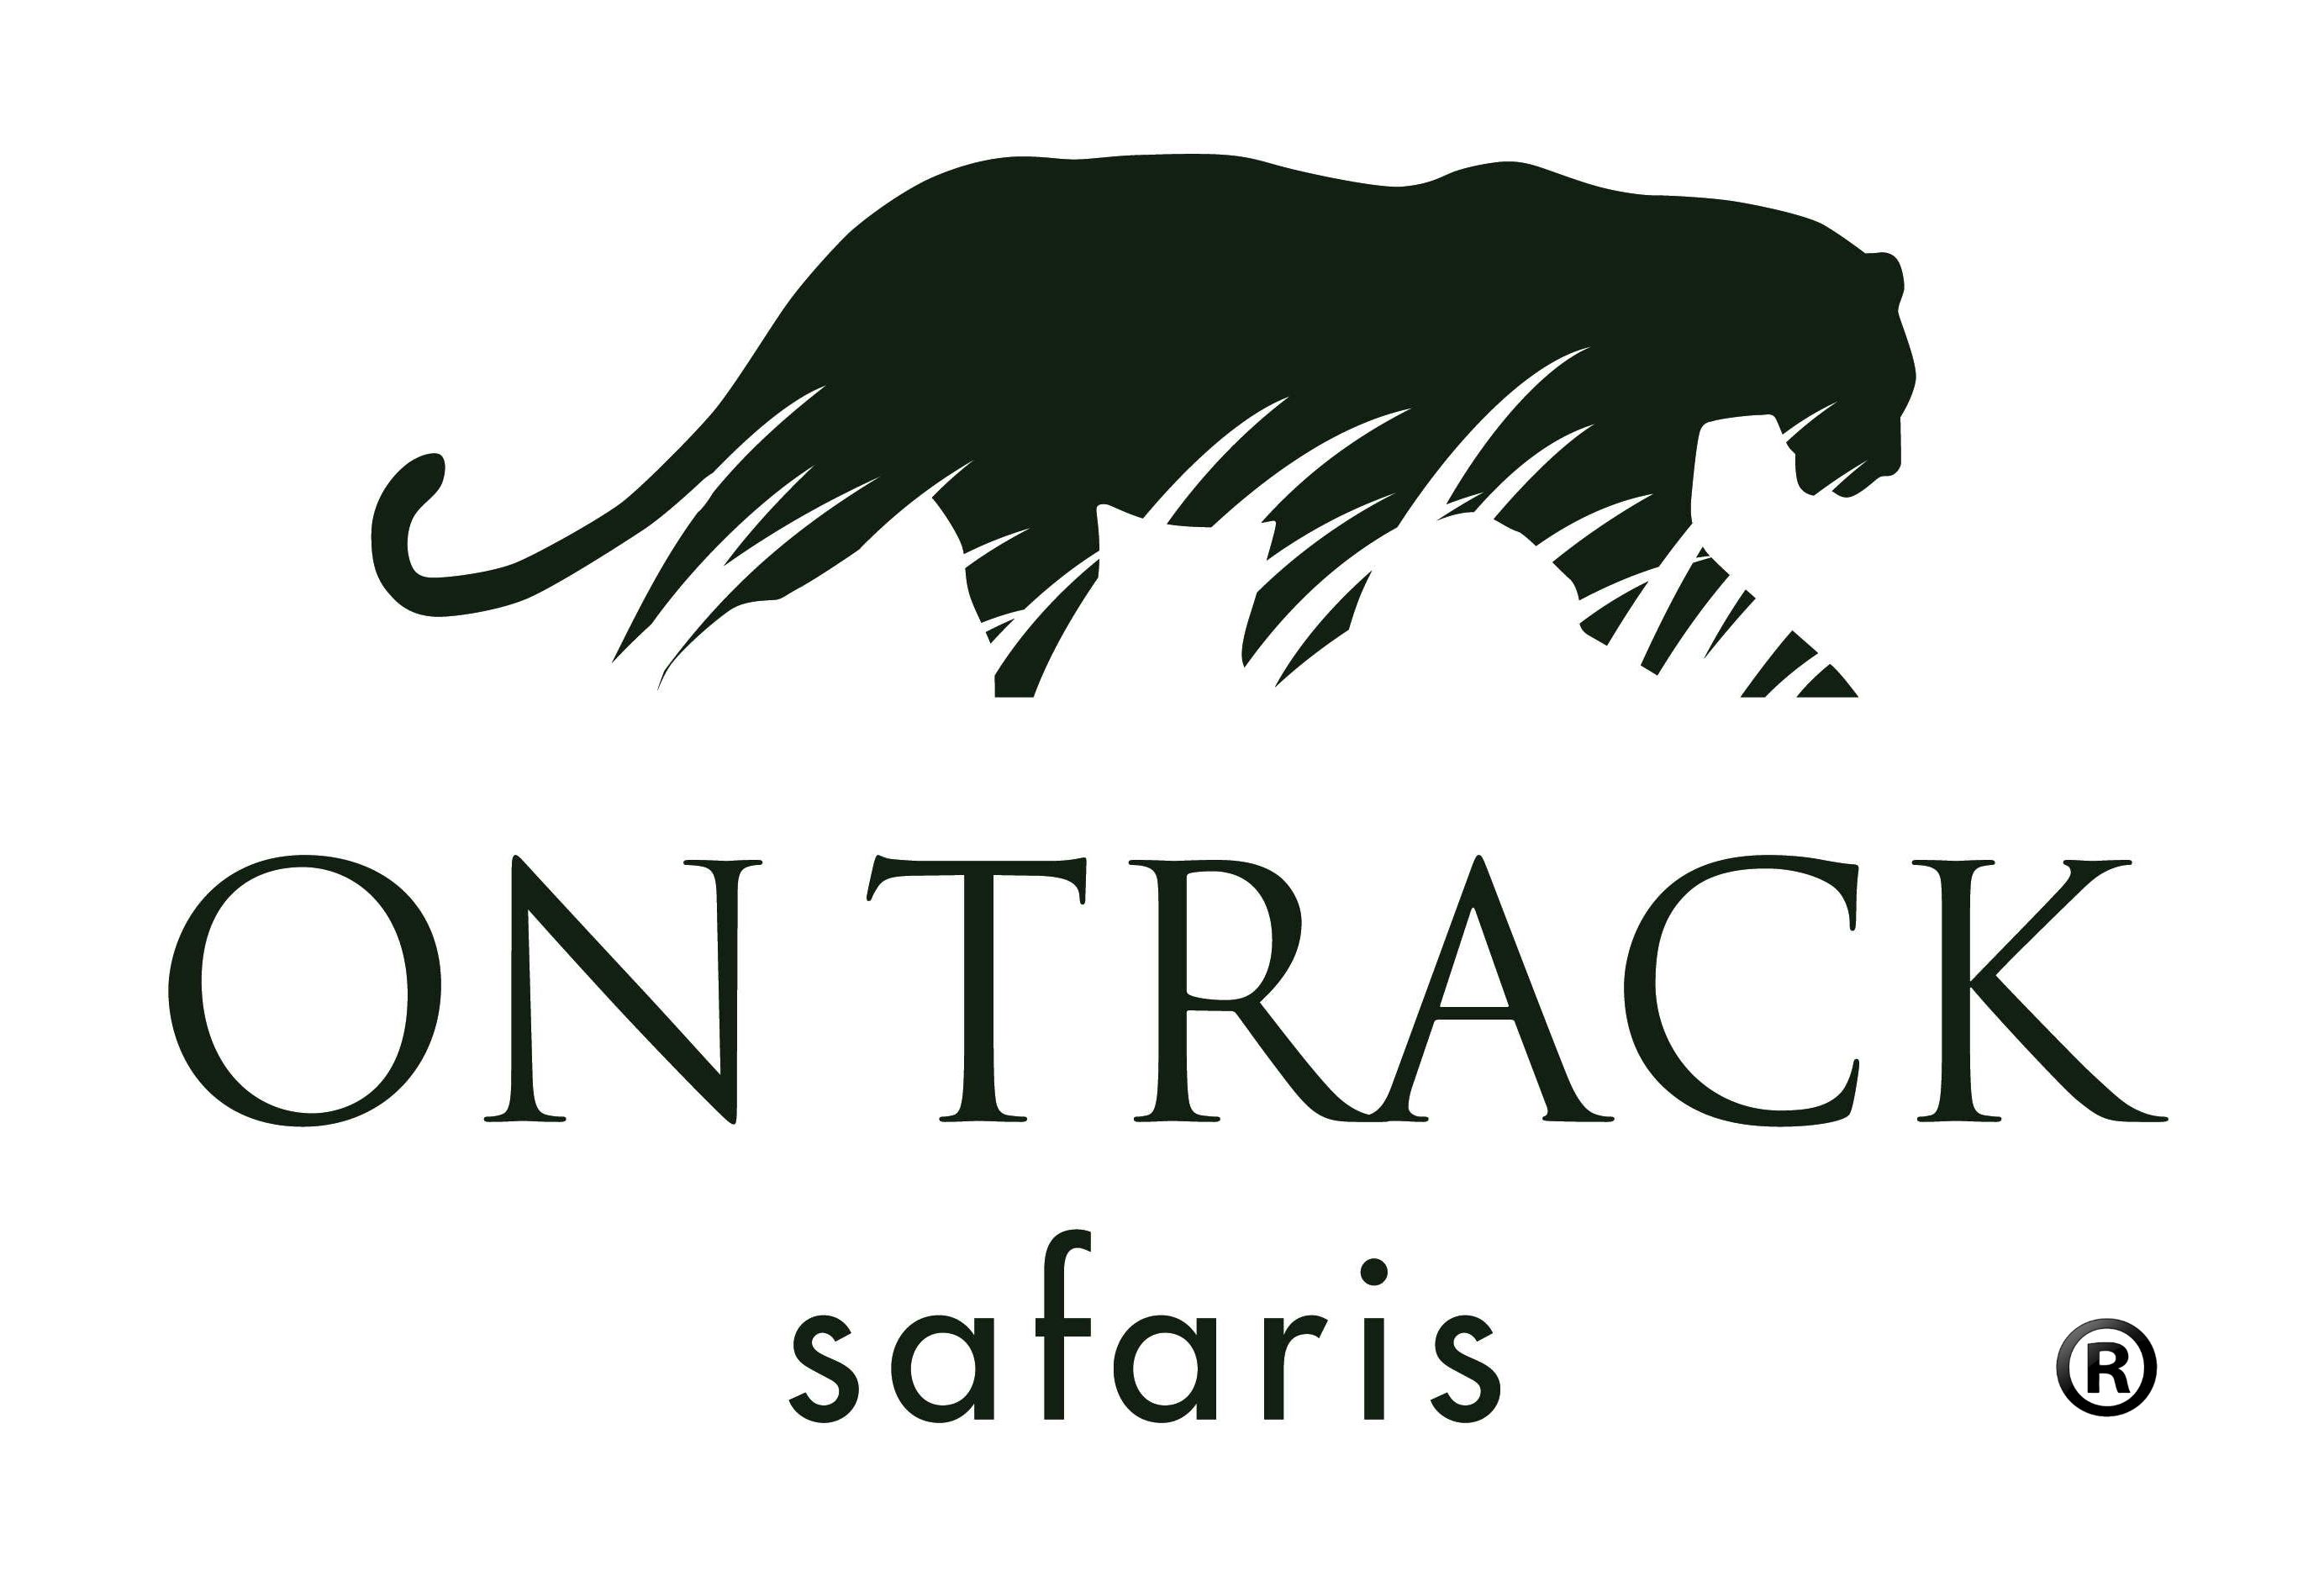 On Track Safaris Ltd